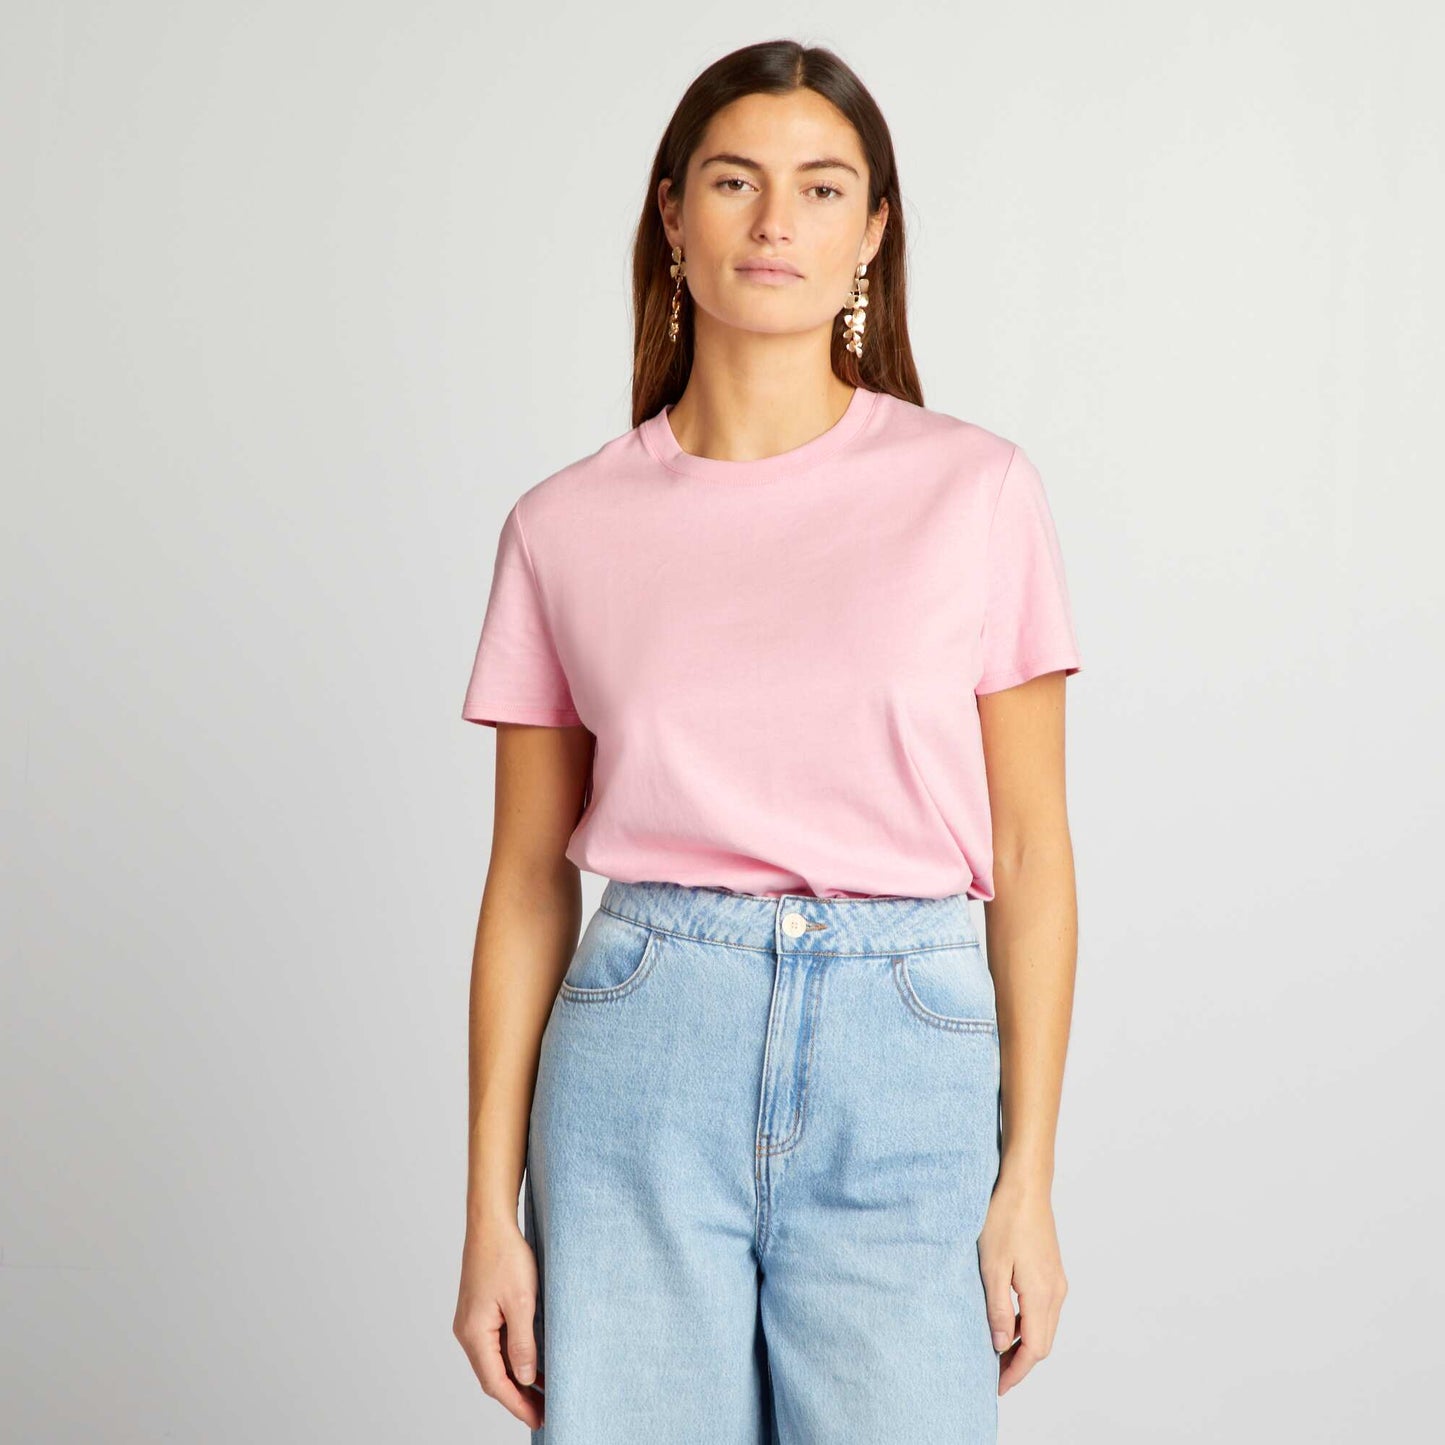 Plain jersey T-shirt soft pink